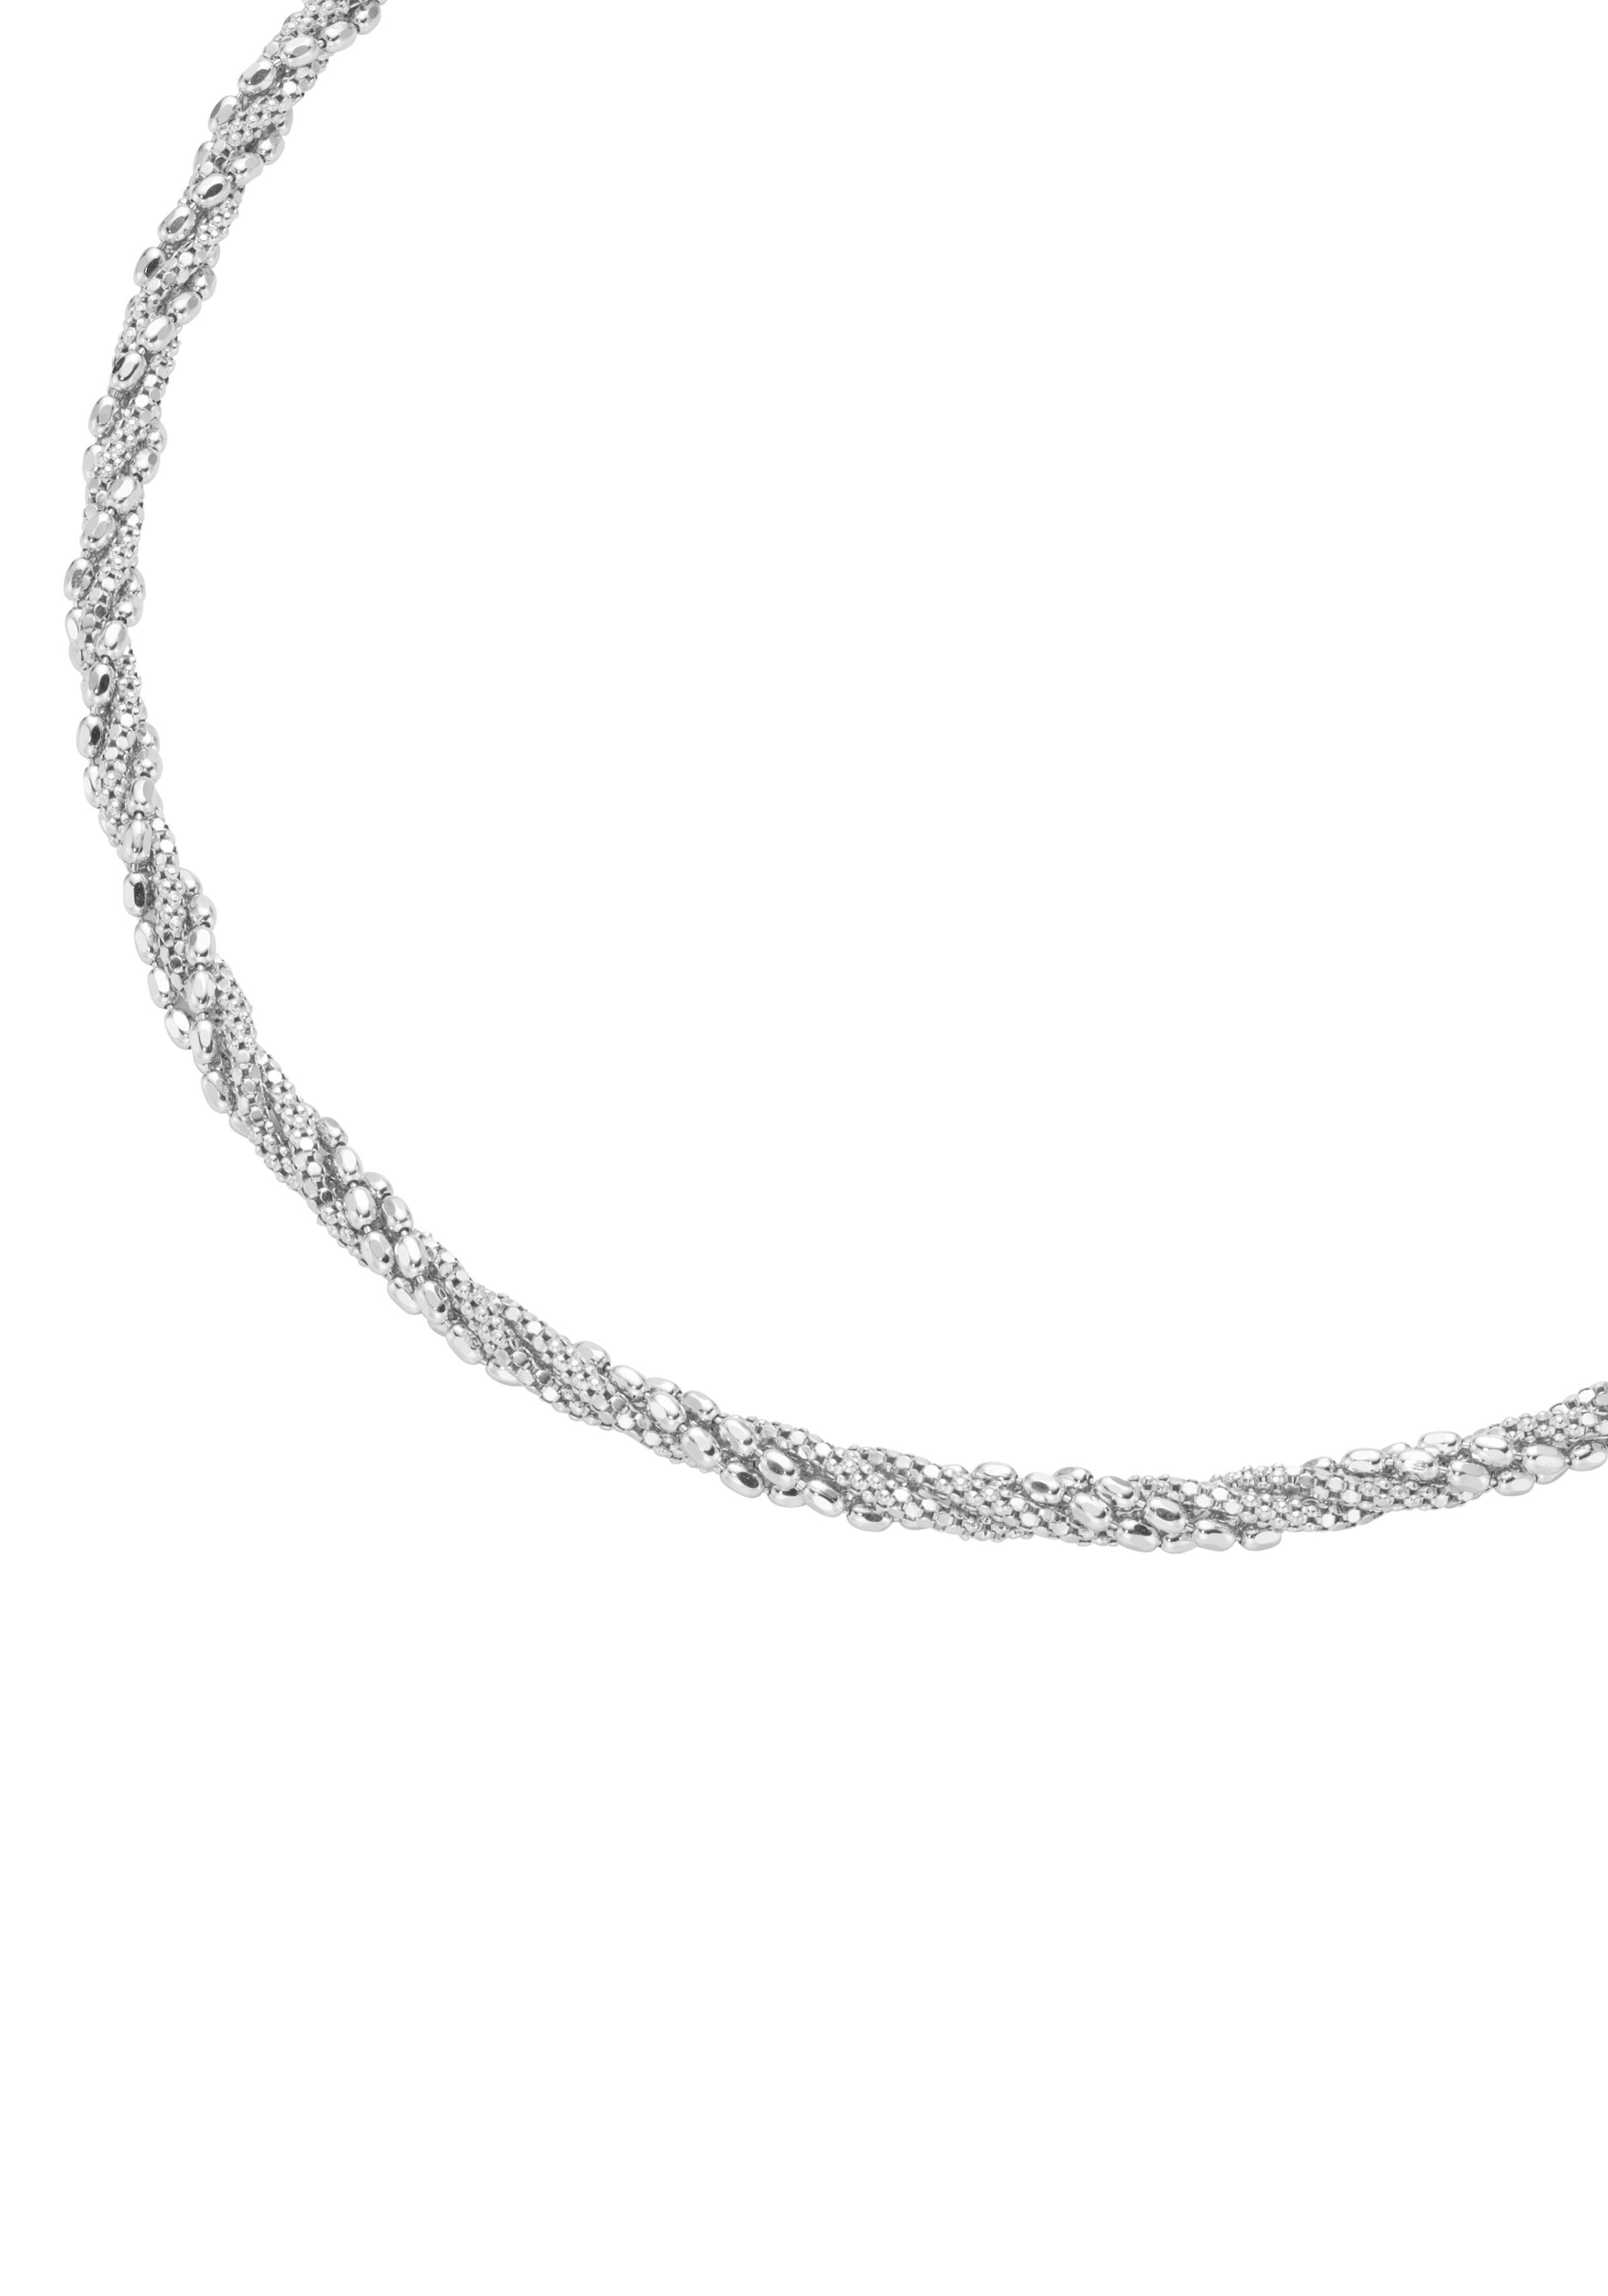 kaufen »Schmuck massiv« Silberkette Geschenk, teilweise online rhodiniert, Firetti diamantiert,